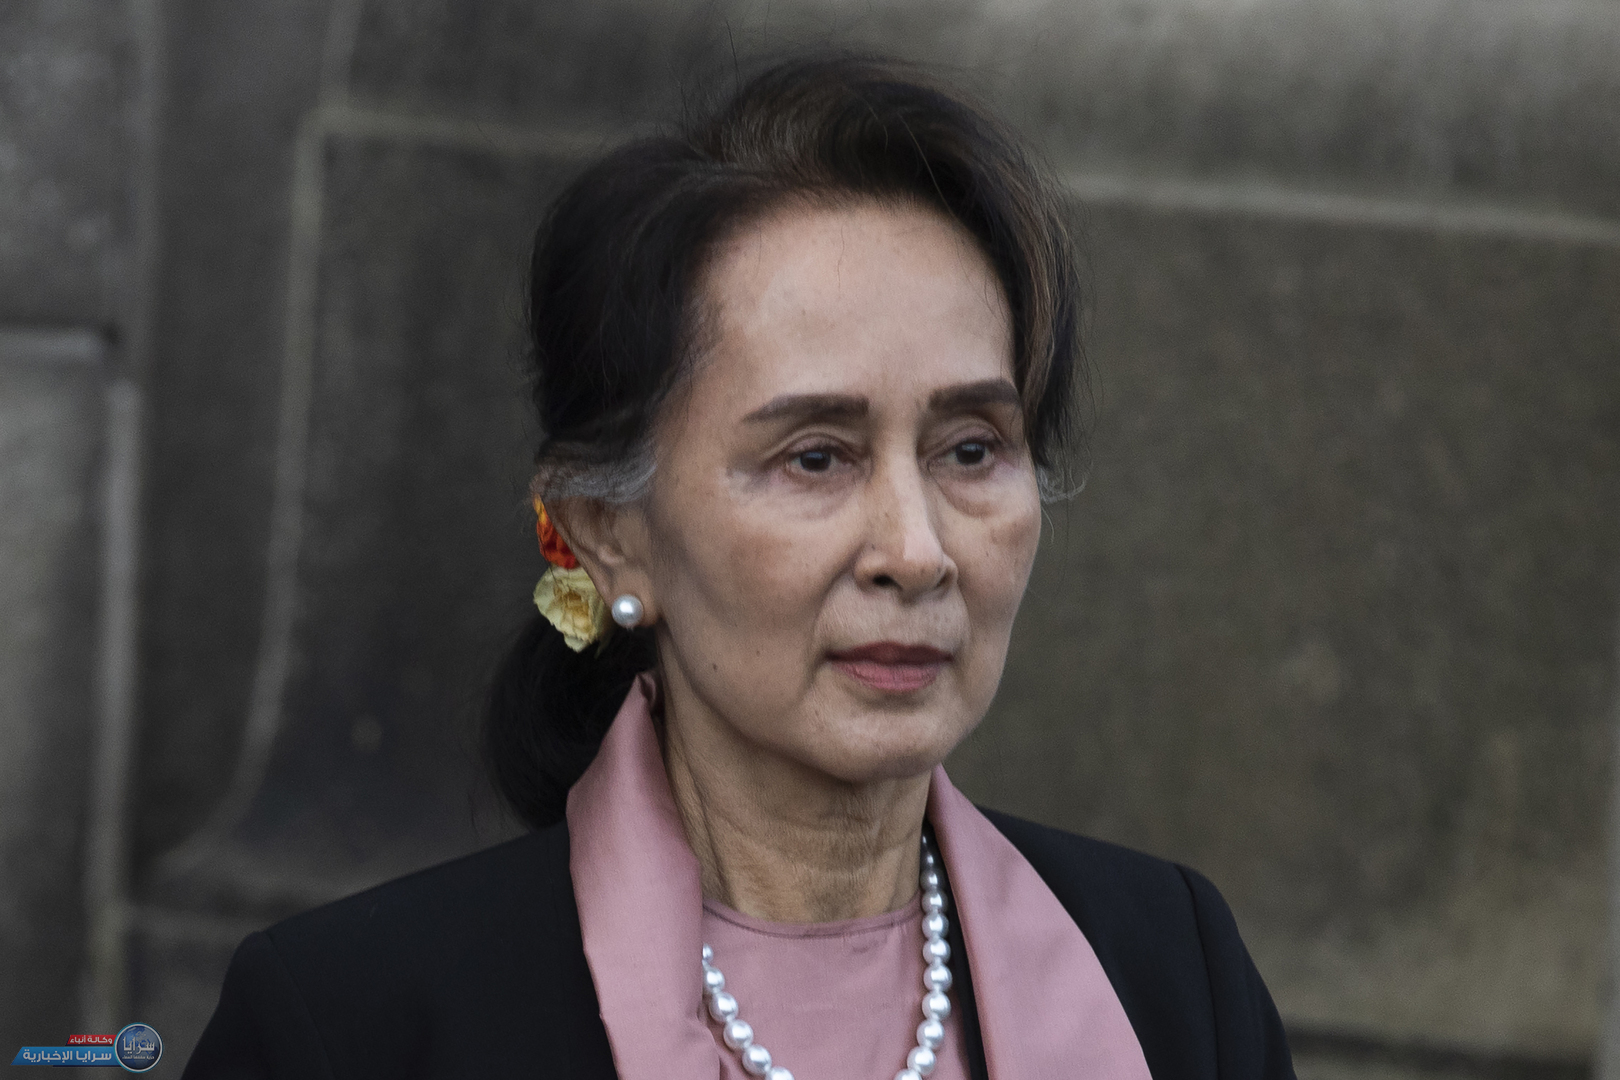 الحكم على زعيمة ميانمار السابقة بالسجن 4 سنوات